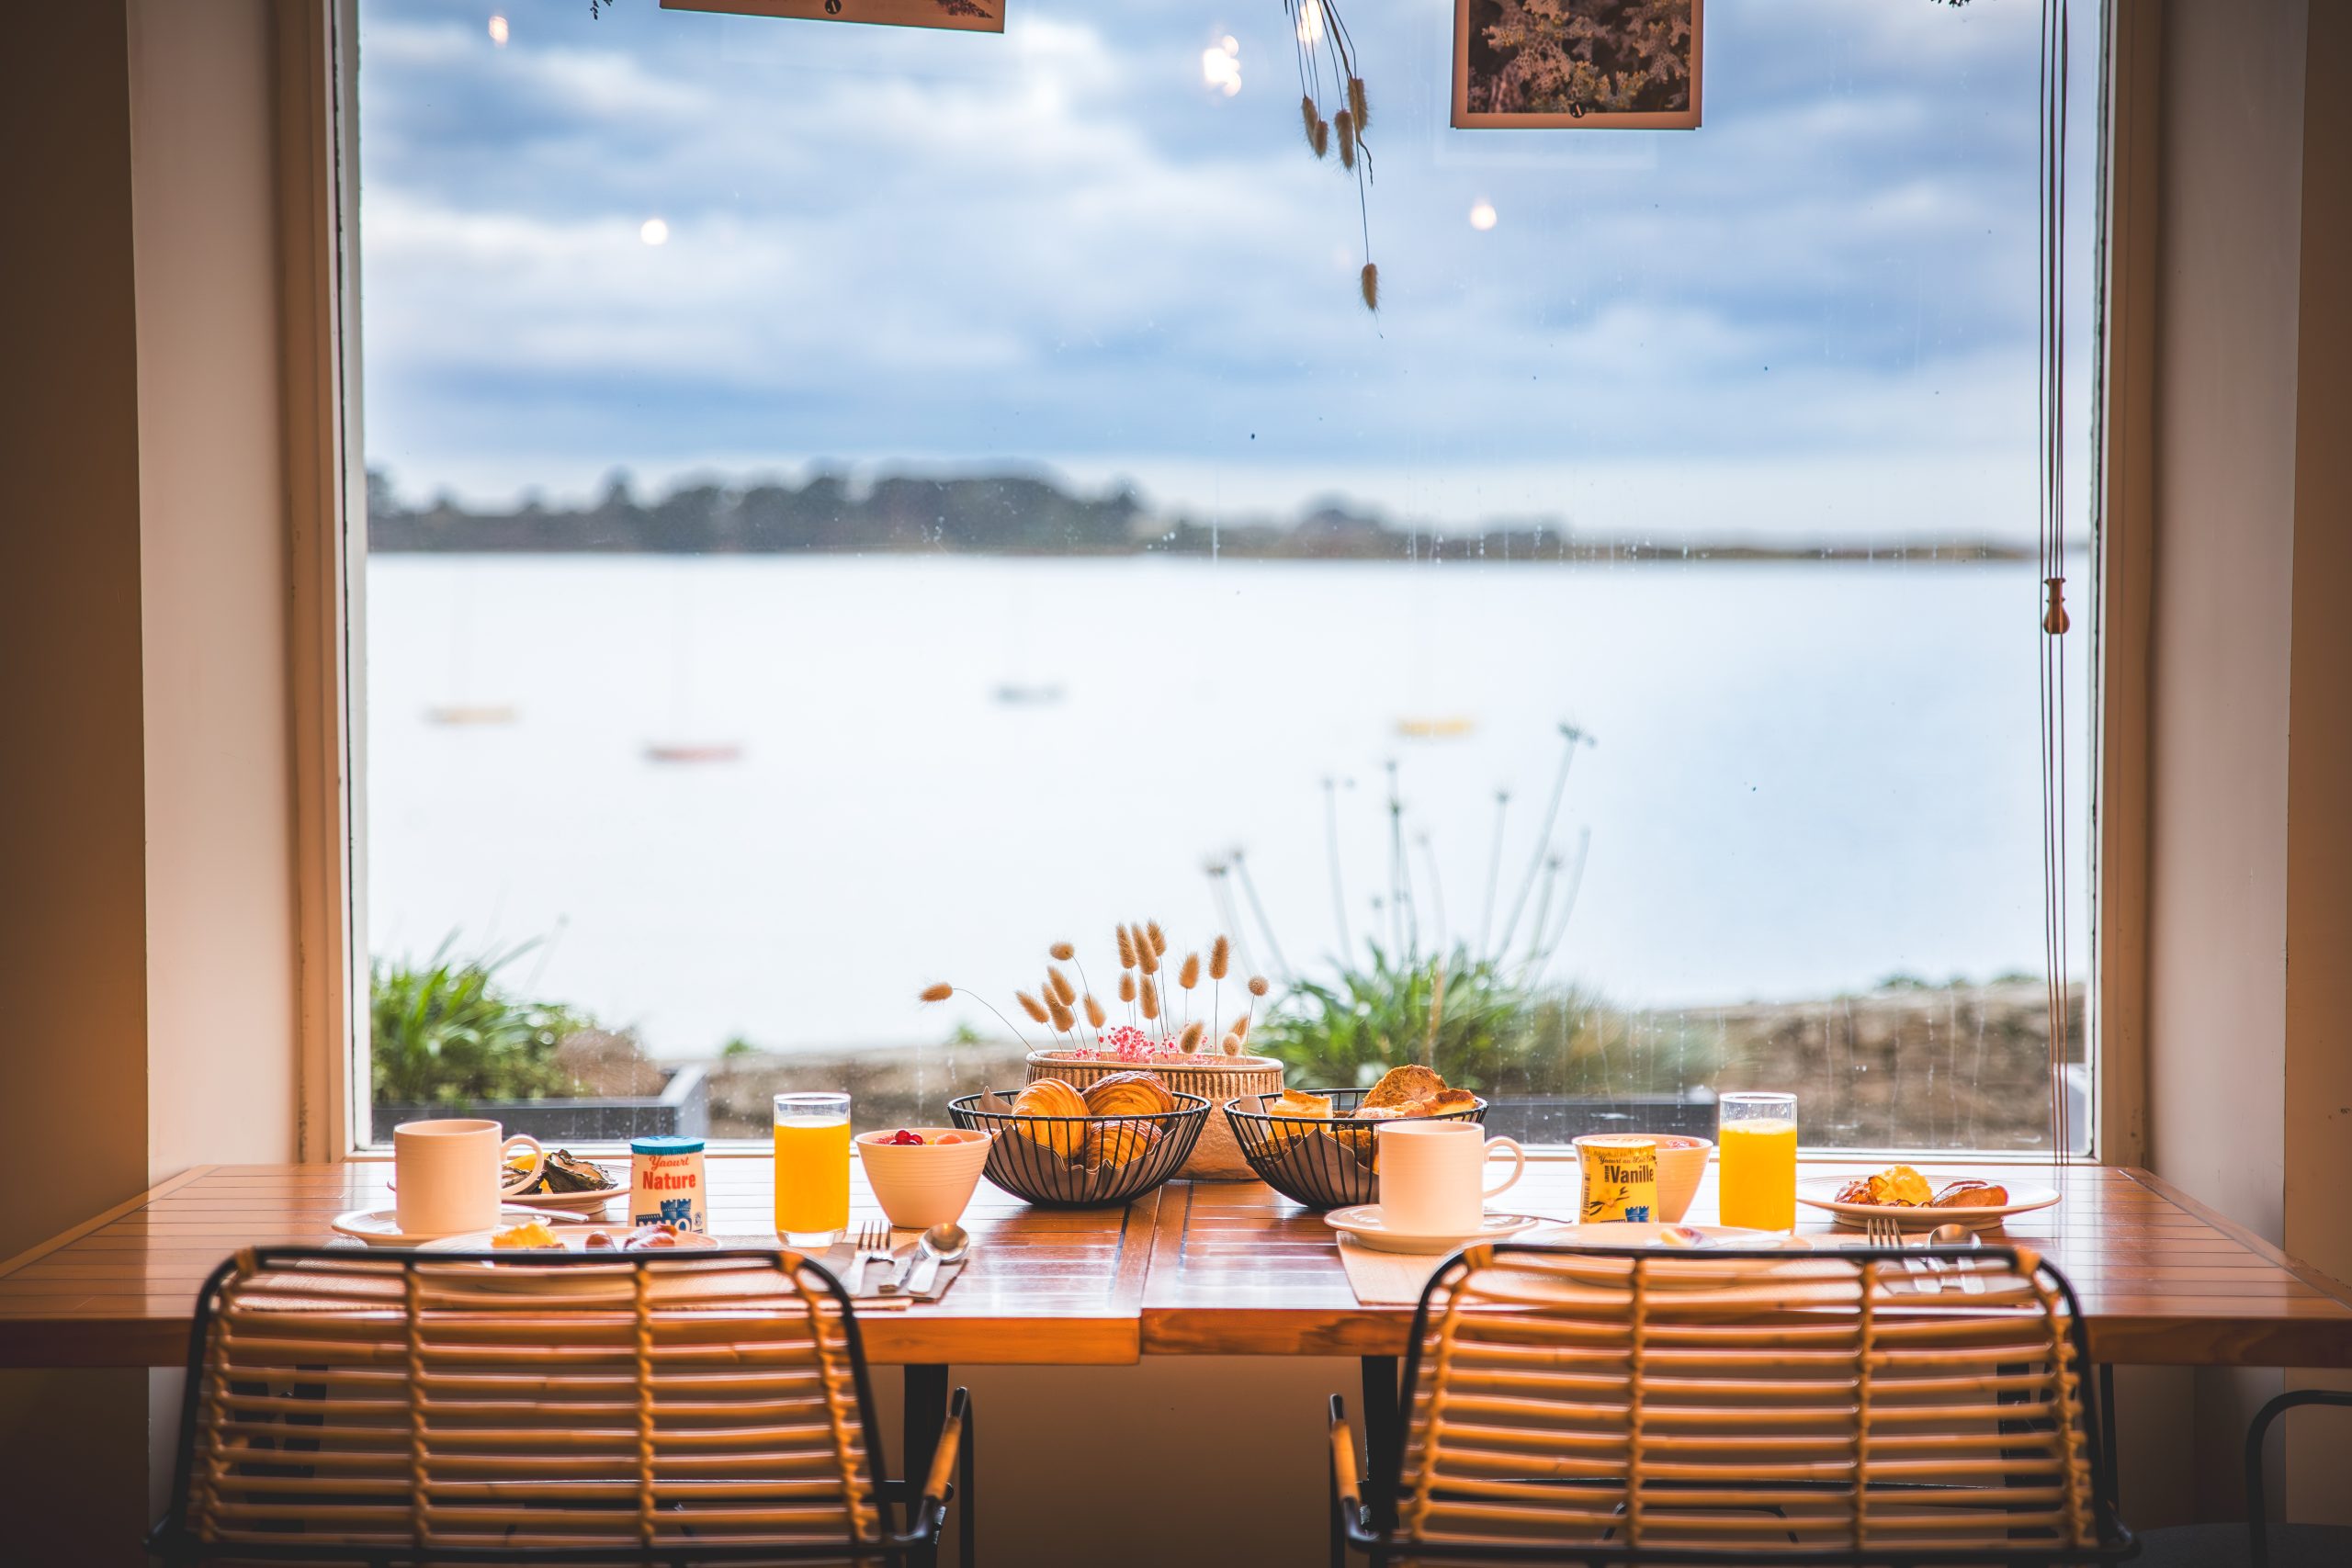 kaffeetafel mit panoramablick auf die küste - restaurant landeda